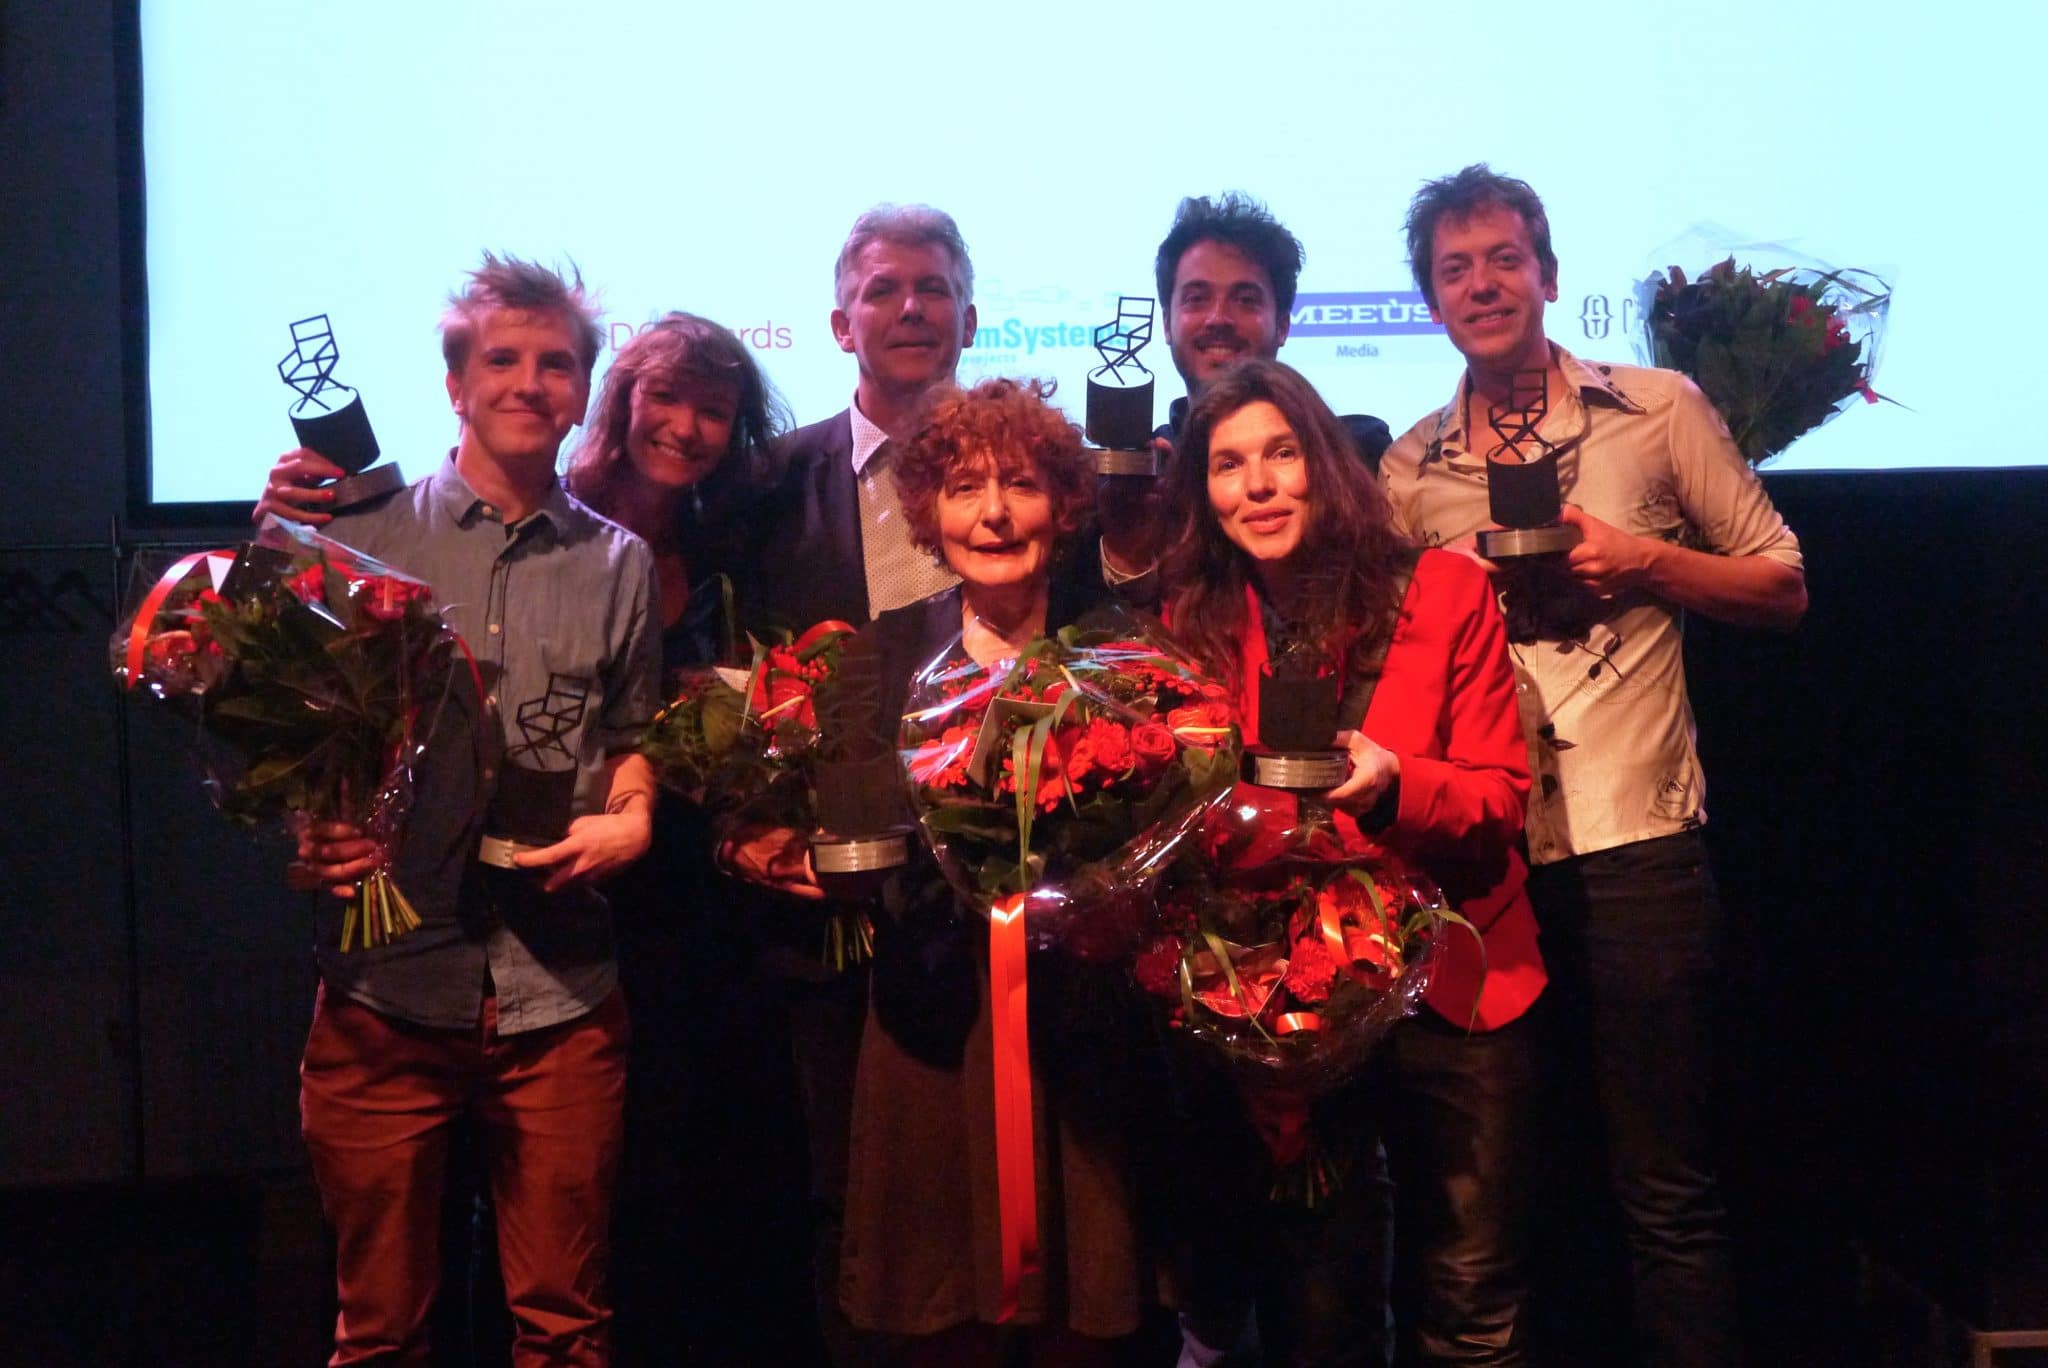 Winnaars Ddg Awards Voor Meest Opmerkelijke Regie 2013 Dutch